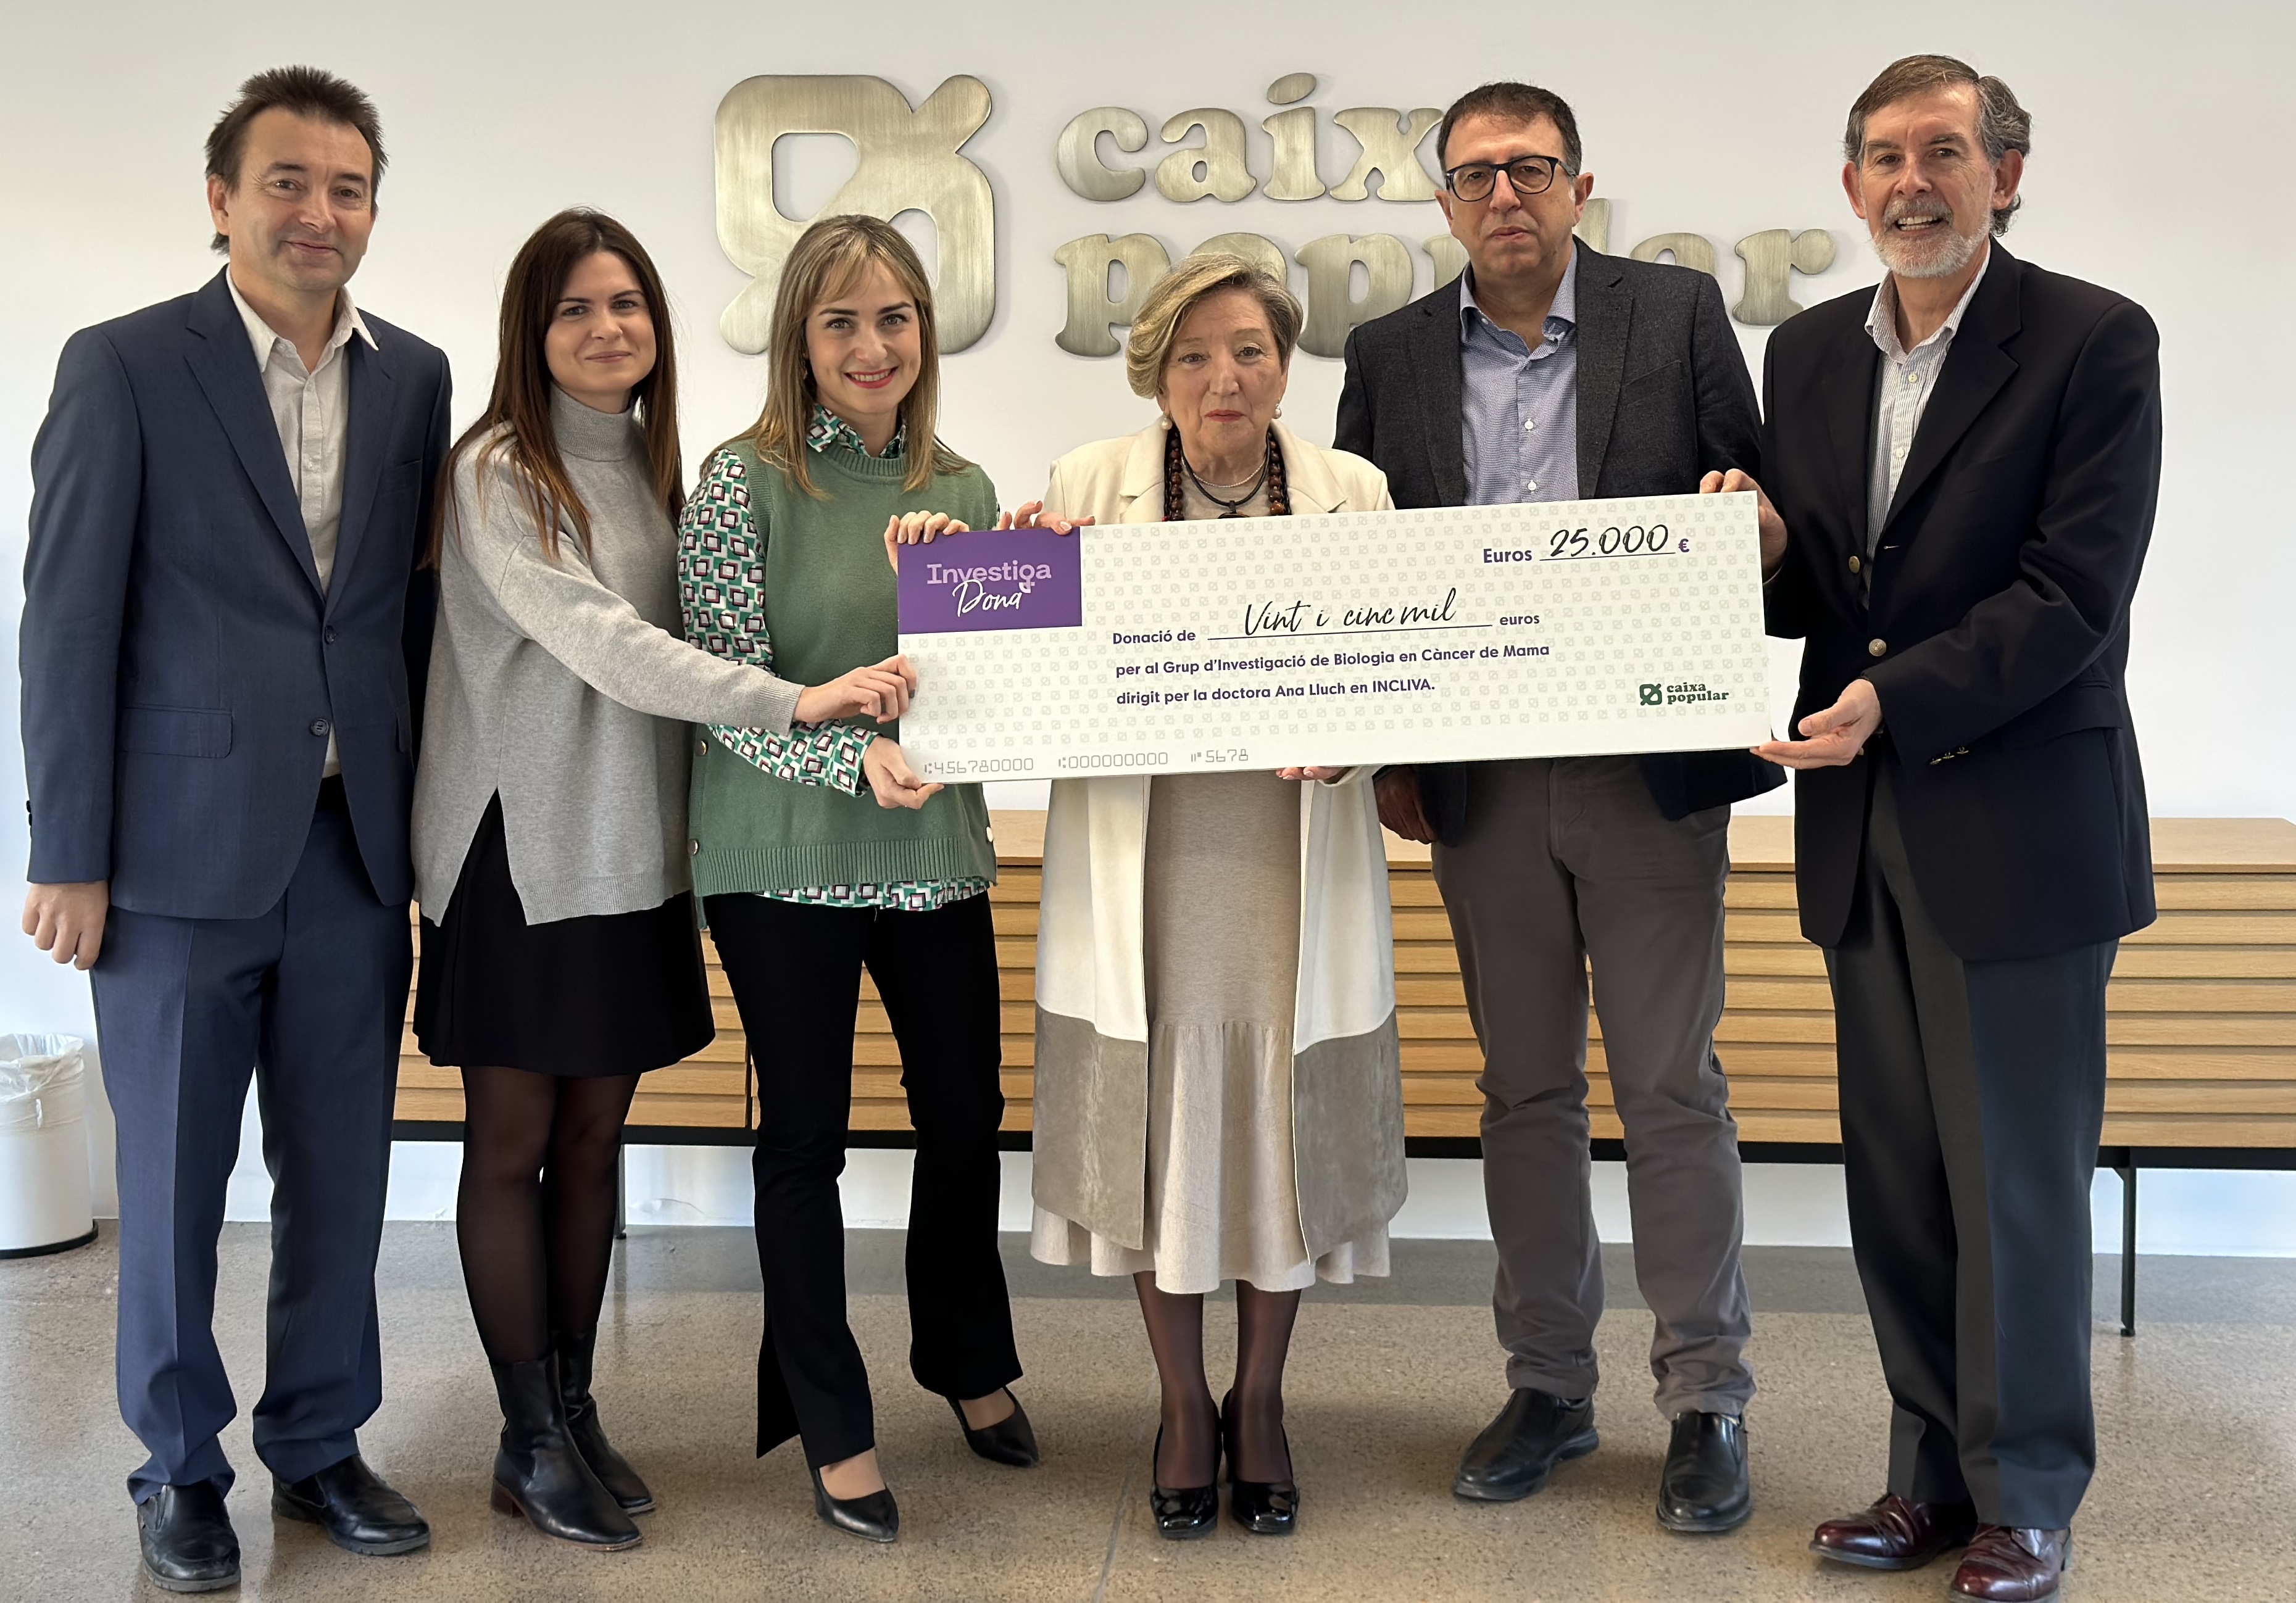 Caixa Popular dona 25.000 euros al proyecto que lidera Ana Lluch para la investigación del Cáncer de Mama a través de INCLIVA